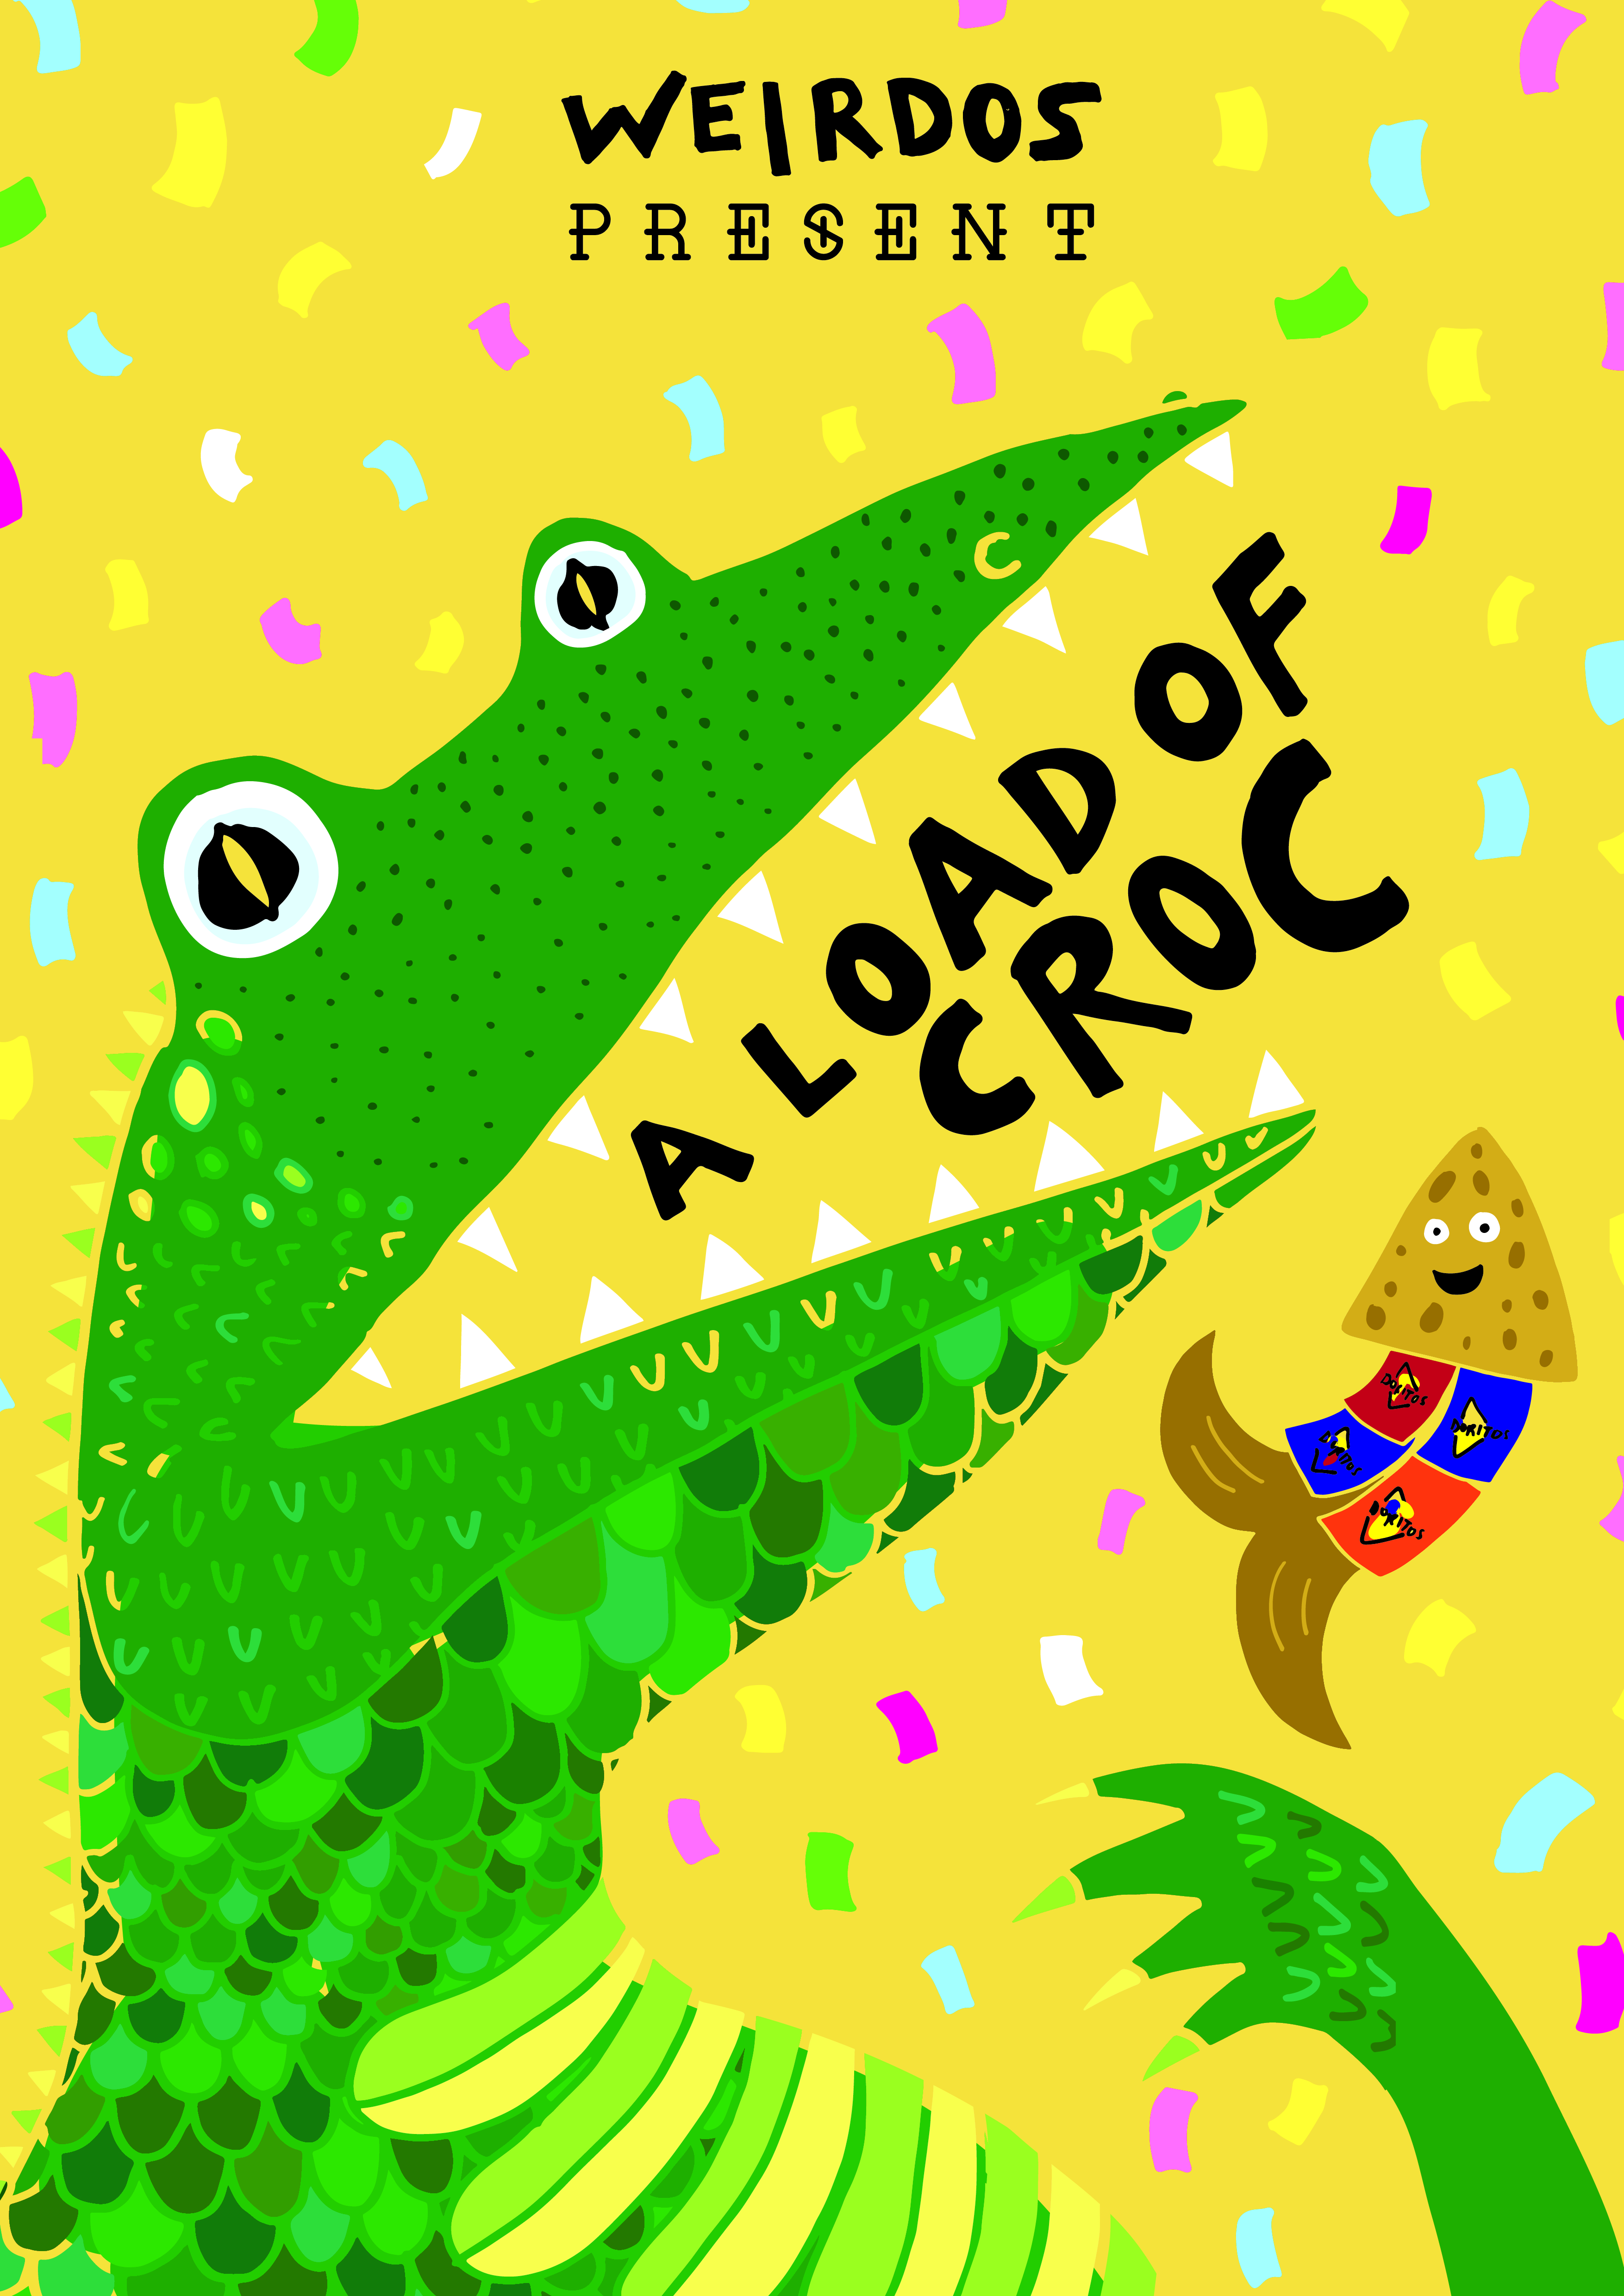 A Load of Croc